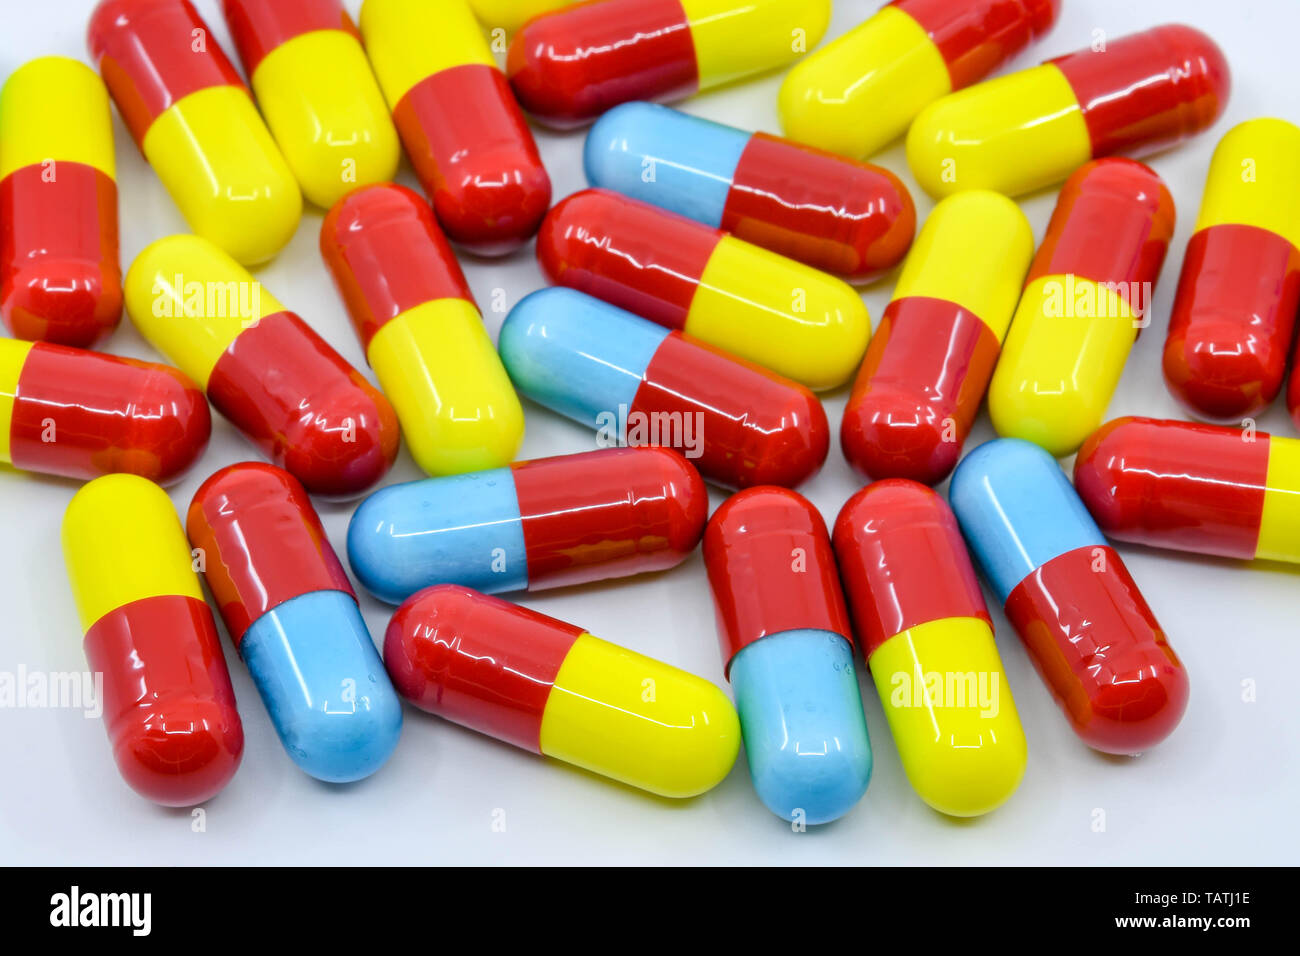 CARDIFF, WALES - Mai 2019: Nahaufnahme von farbigen Kapseln von Erkältung und Grippe Medikamente Stockfoto